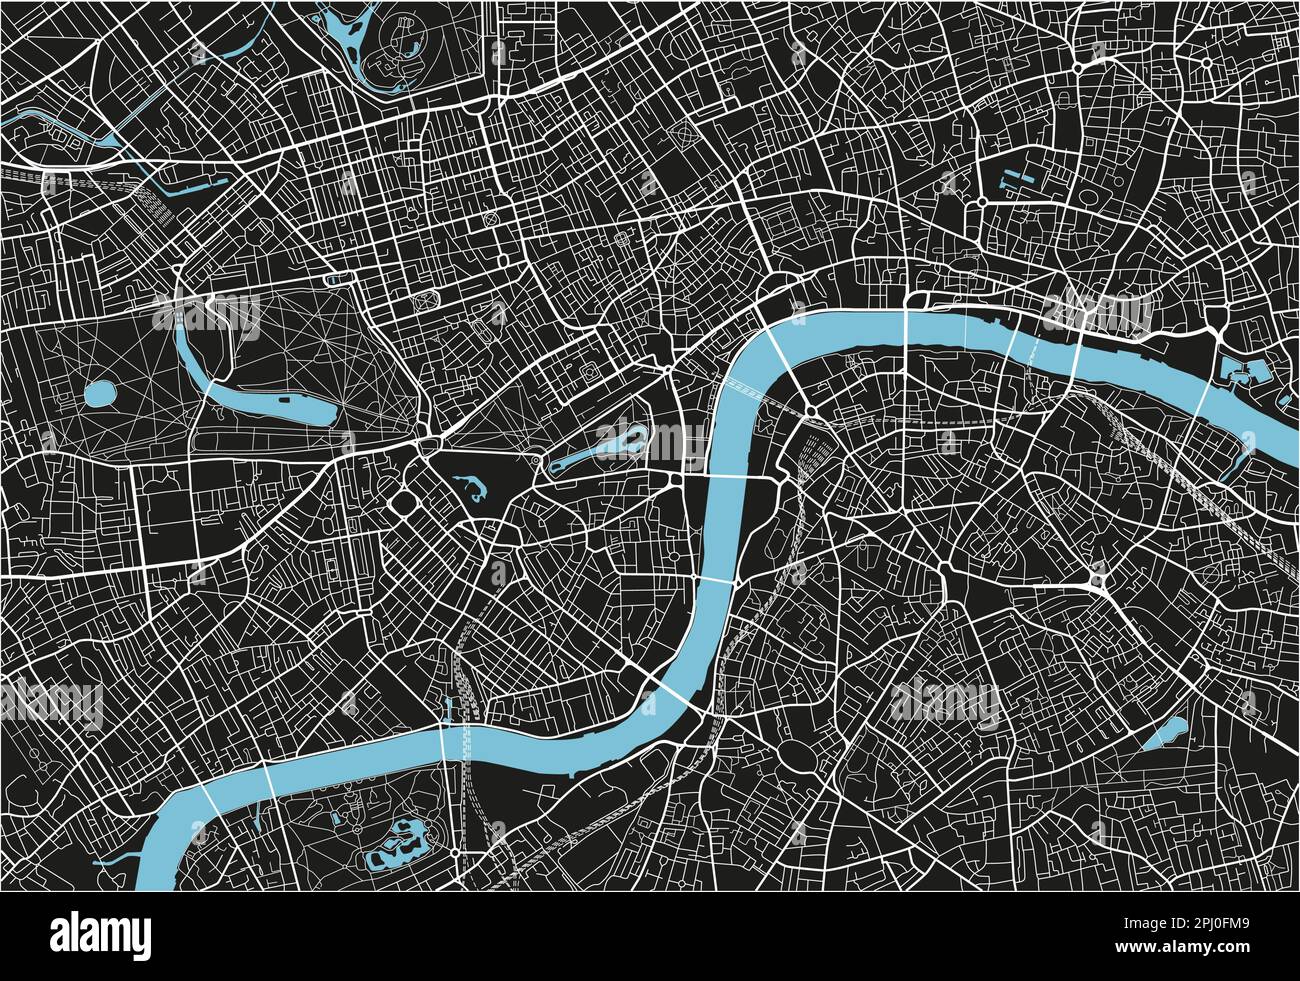 Schwarz-Weiß-Vektor-Stadtplan von London mit gut organisierten getrennten Schichten. Stock Vektor